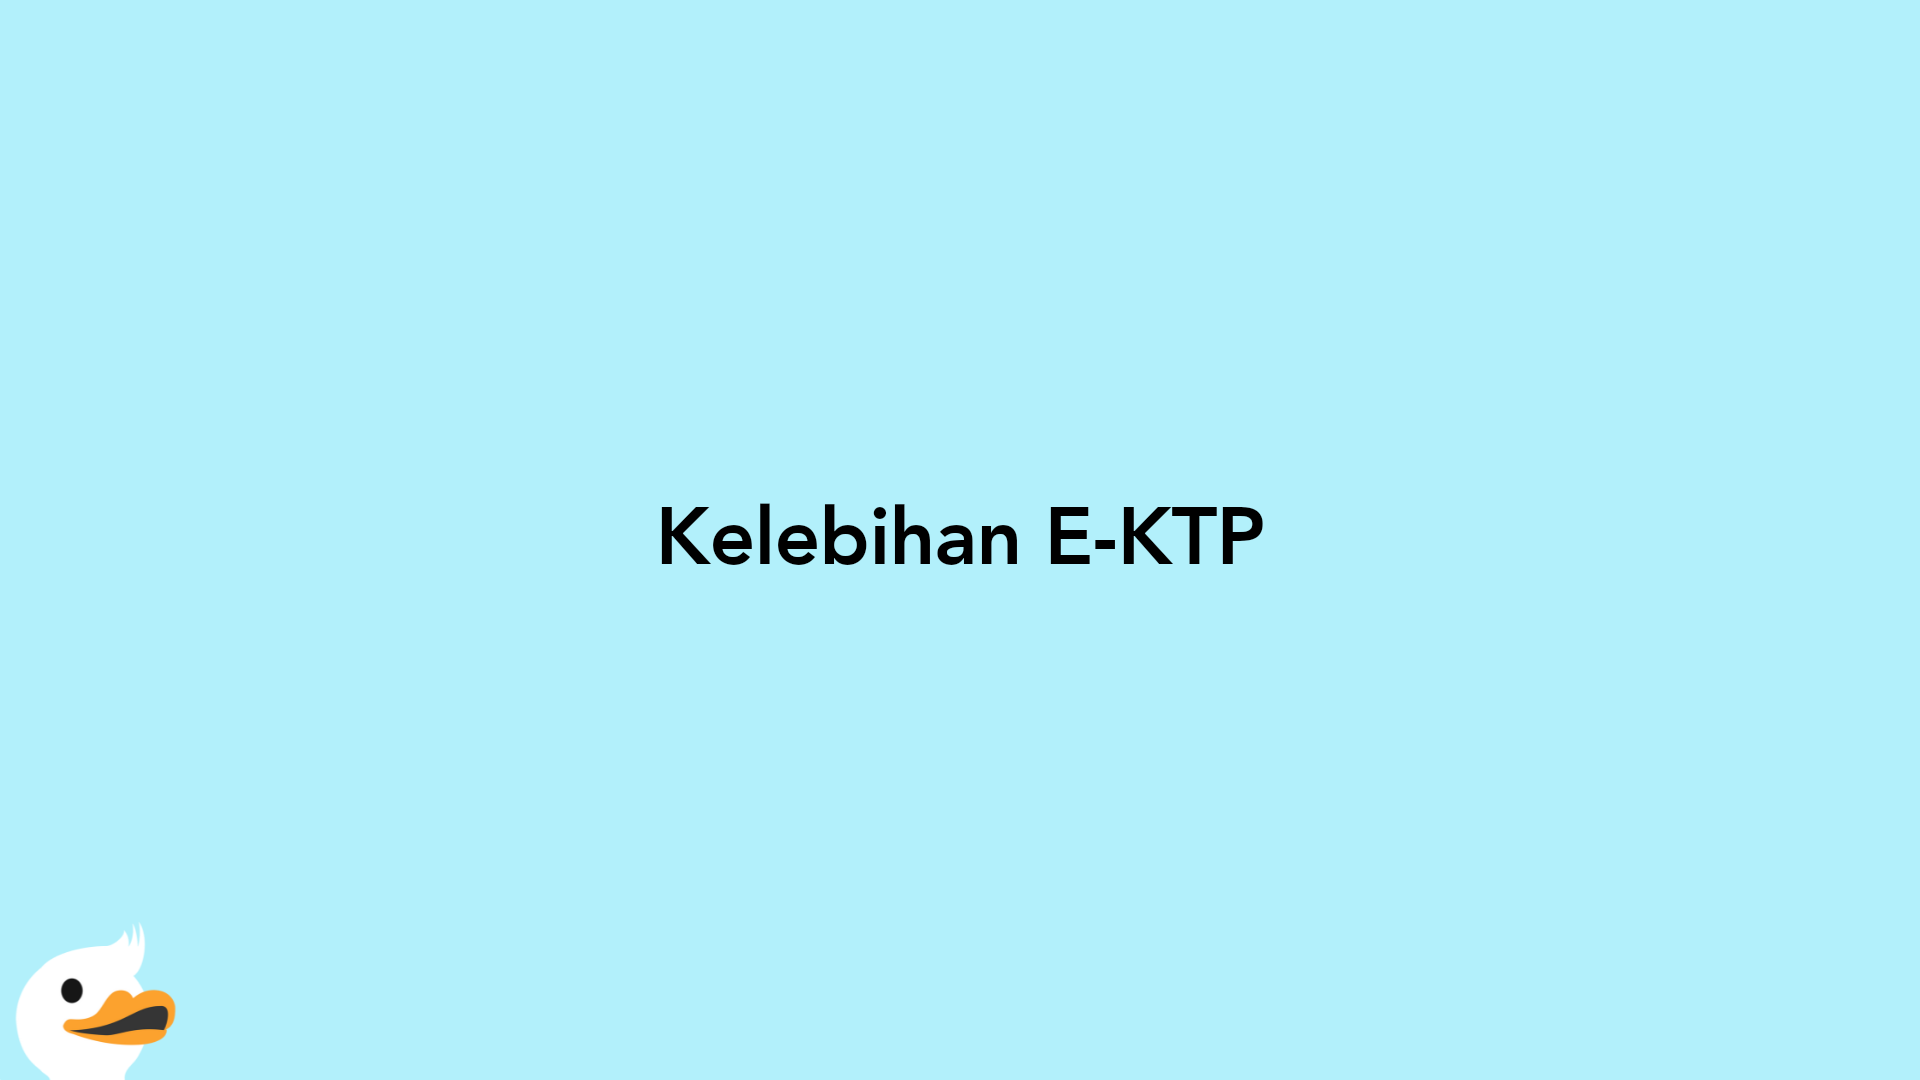 Kelebihan E-KTP